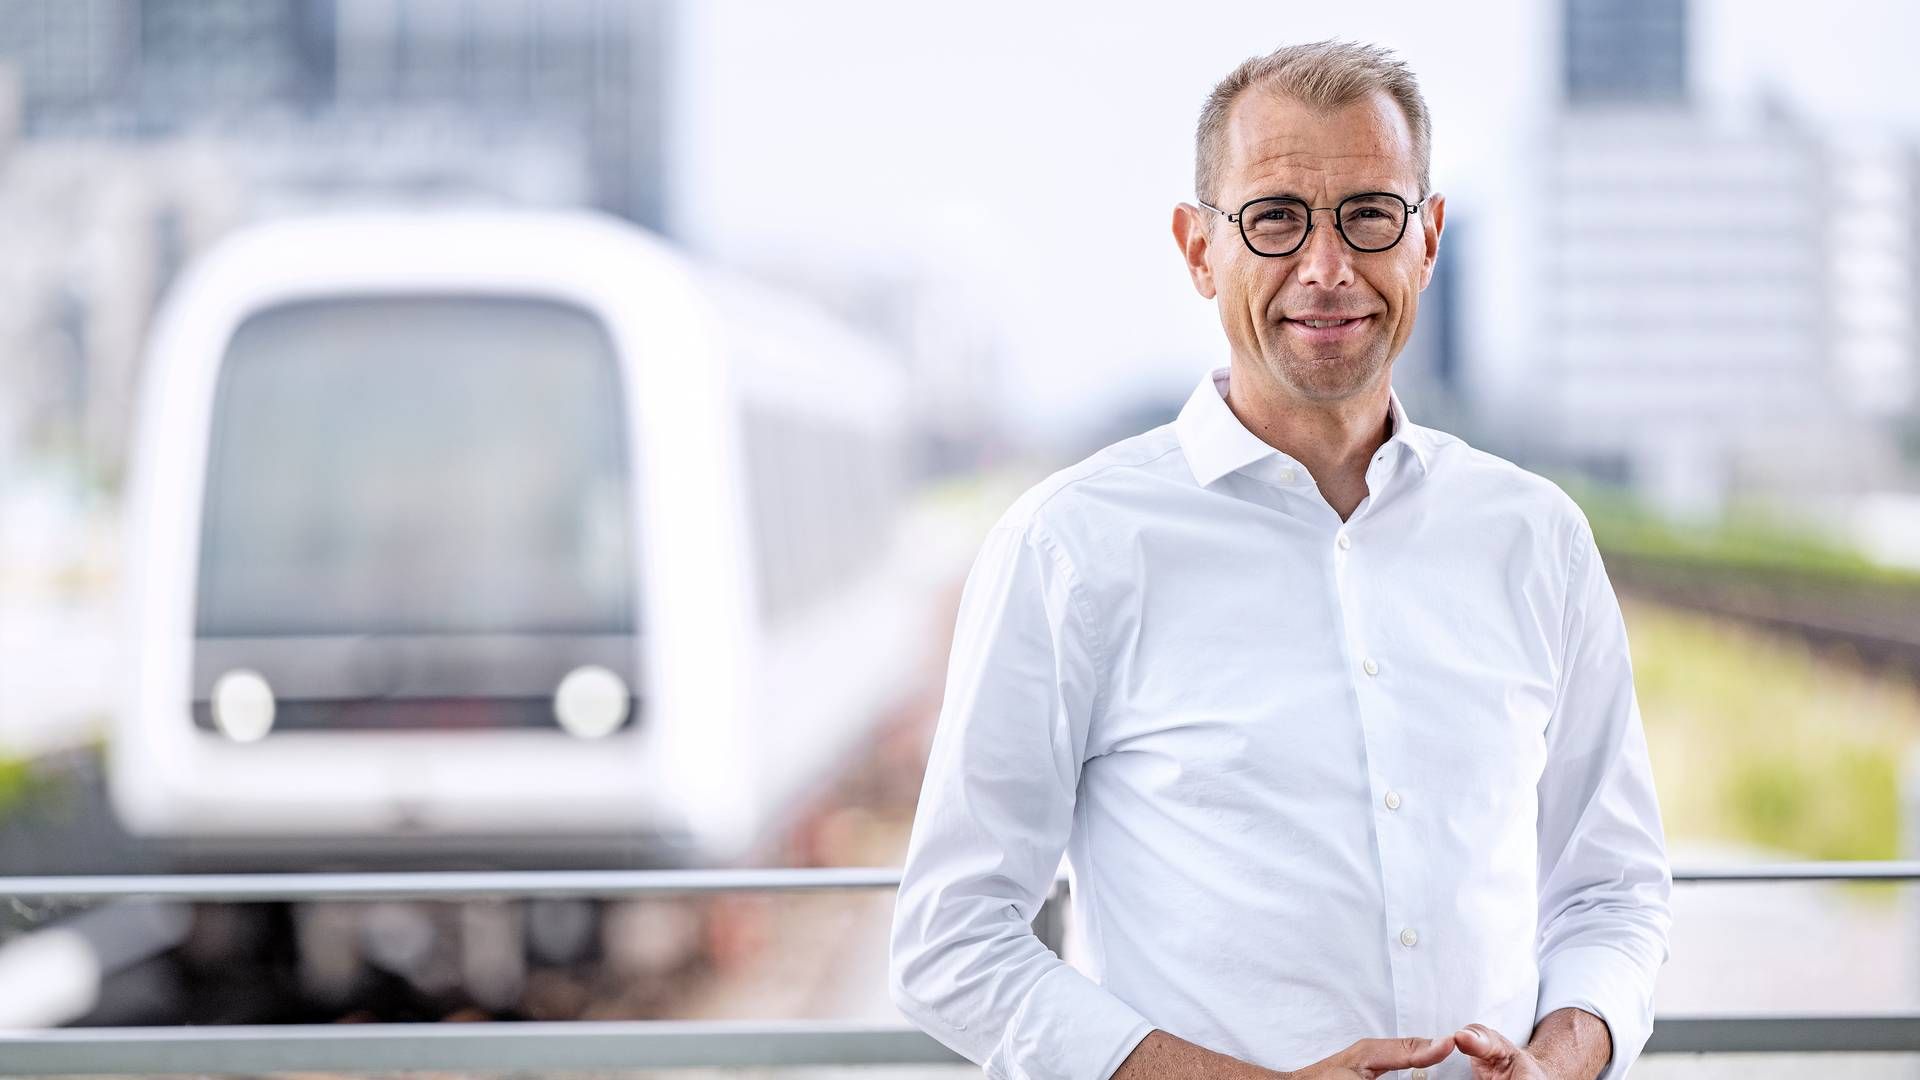 Carsten Riis, adm. direktør for Metroselskabet, fortæller, at Metroselskabet blandt andet har ansat flere medarbejdere for at sikre, at selskabet har de rette kompetencer i huset til at håndtere truslen. | Foto: Bax Lindhardt / Metroselskabet